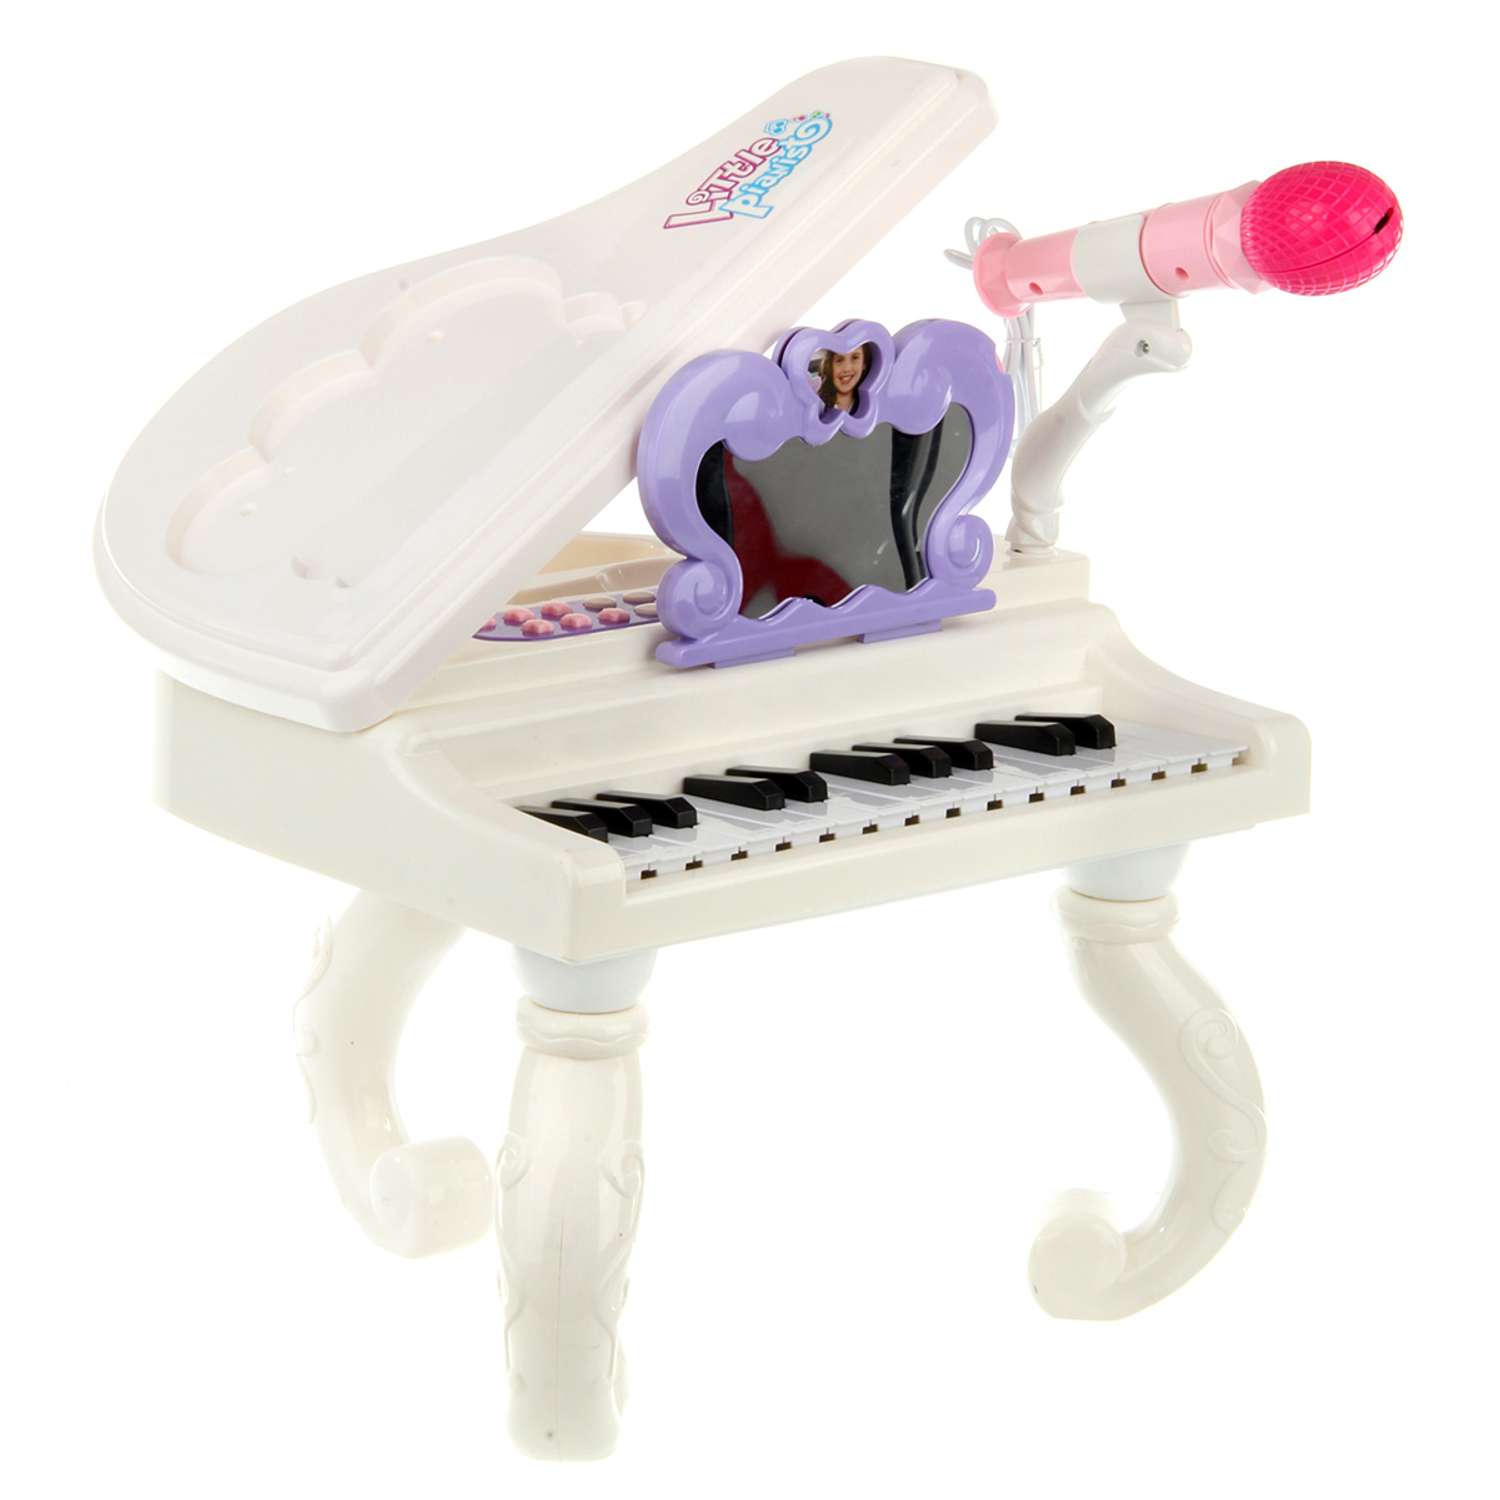 Игровой набор Veld Co Пианино с микрофоном со звуковыми и световыми эффектами - фото 1